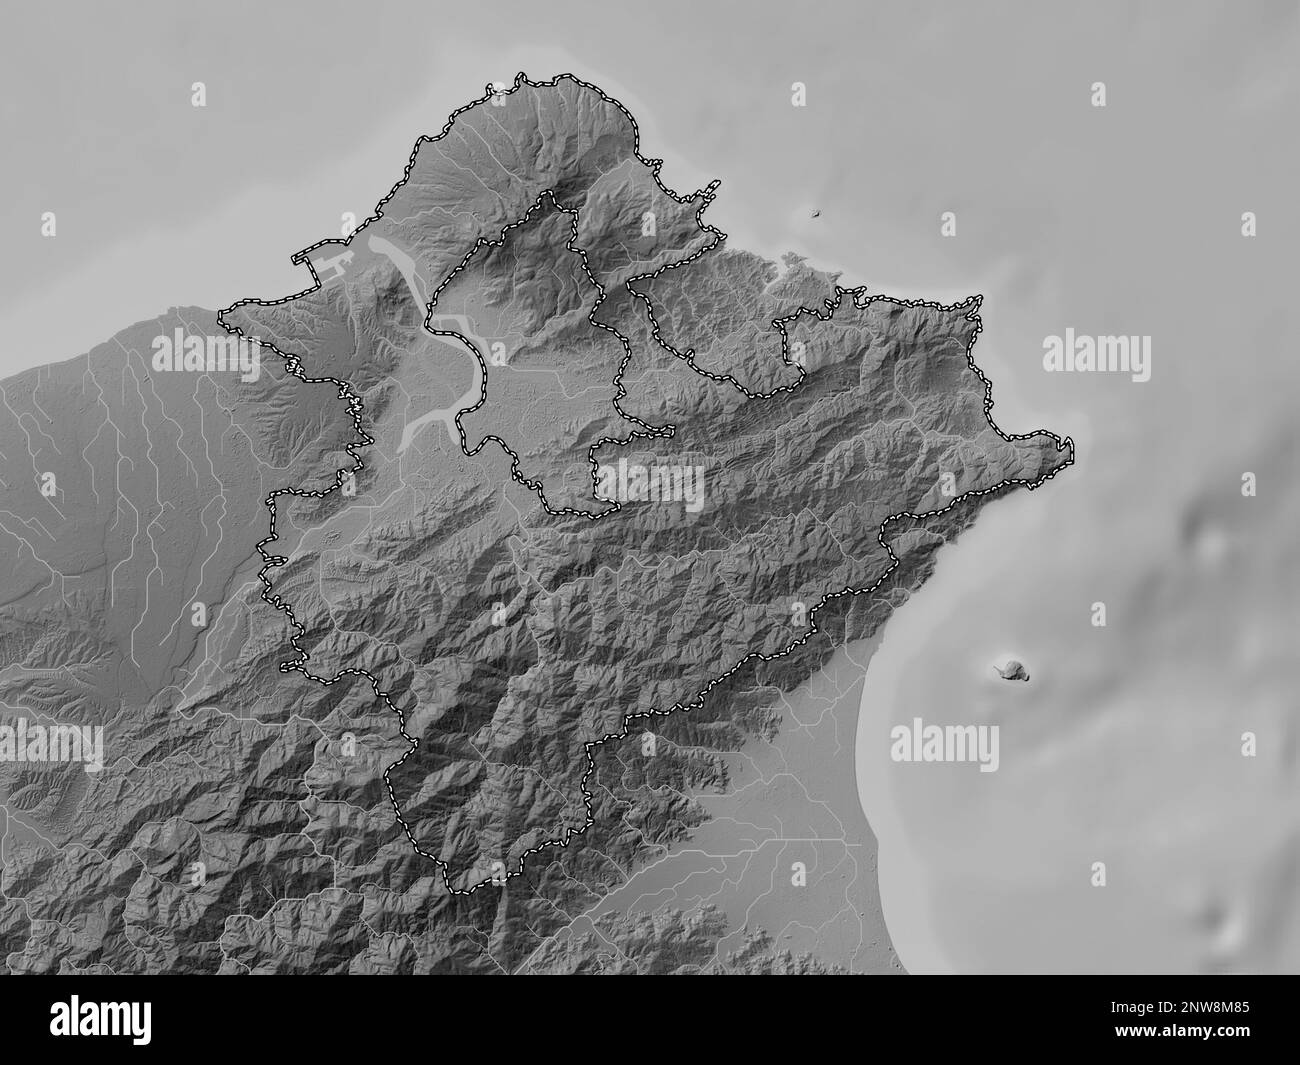 Ville de New Taipei, municipalité spéciale de Taïwan. Carte d'altitude en niveaux de gris avec lacs et rivières Banque D'Images